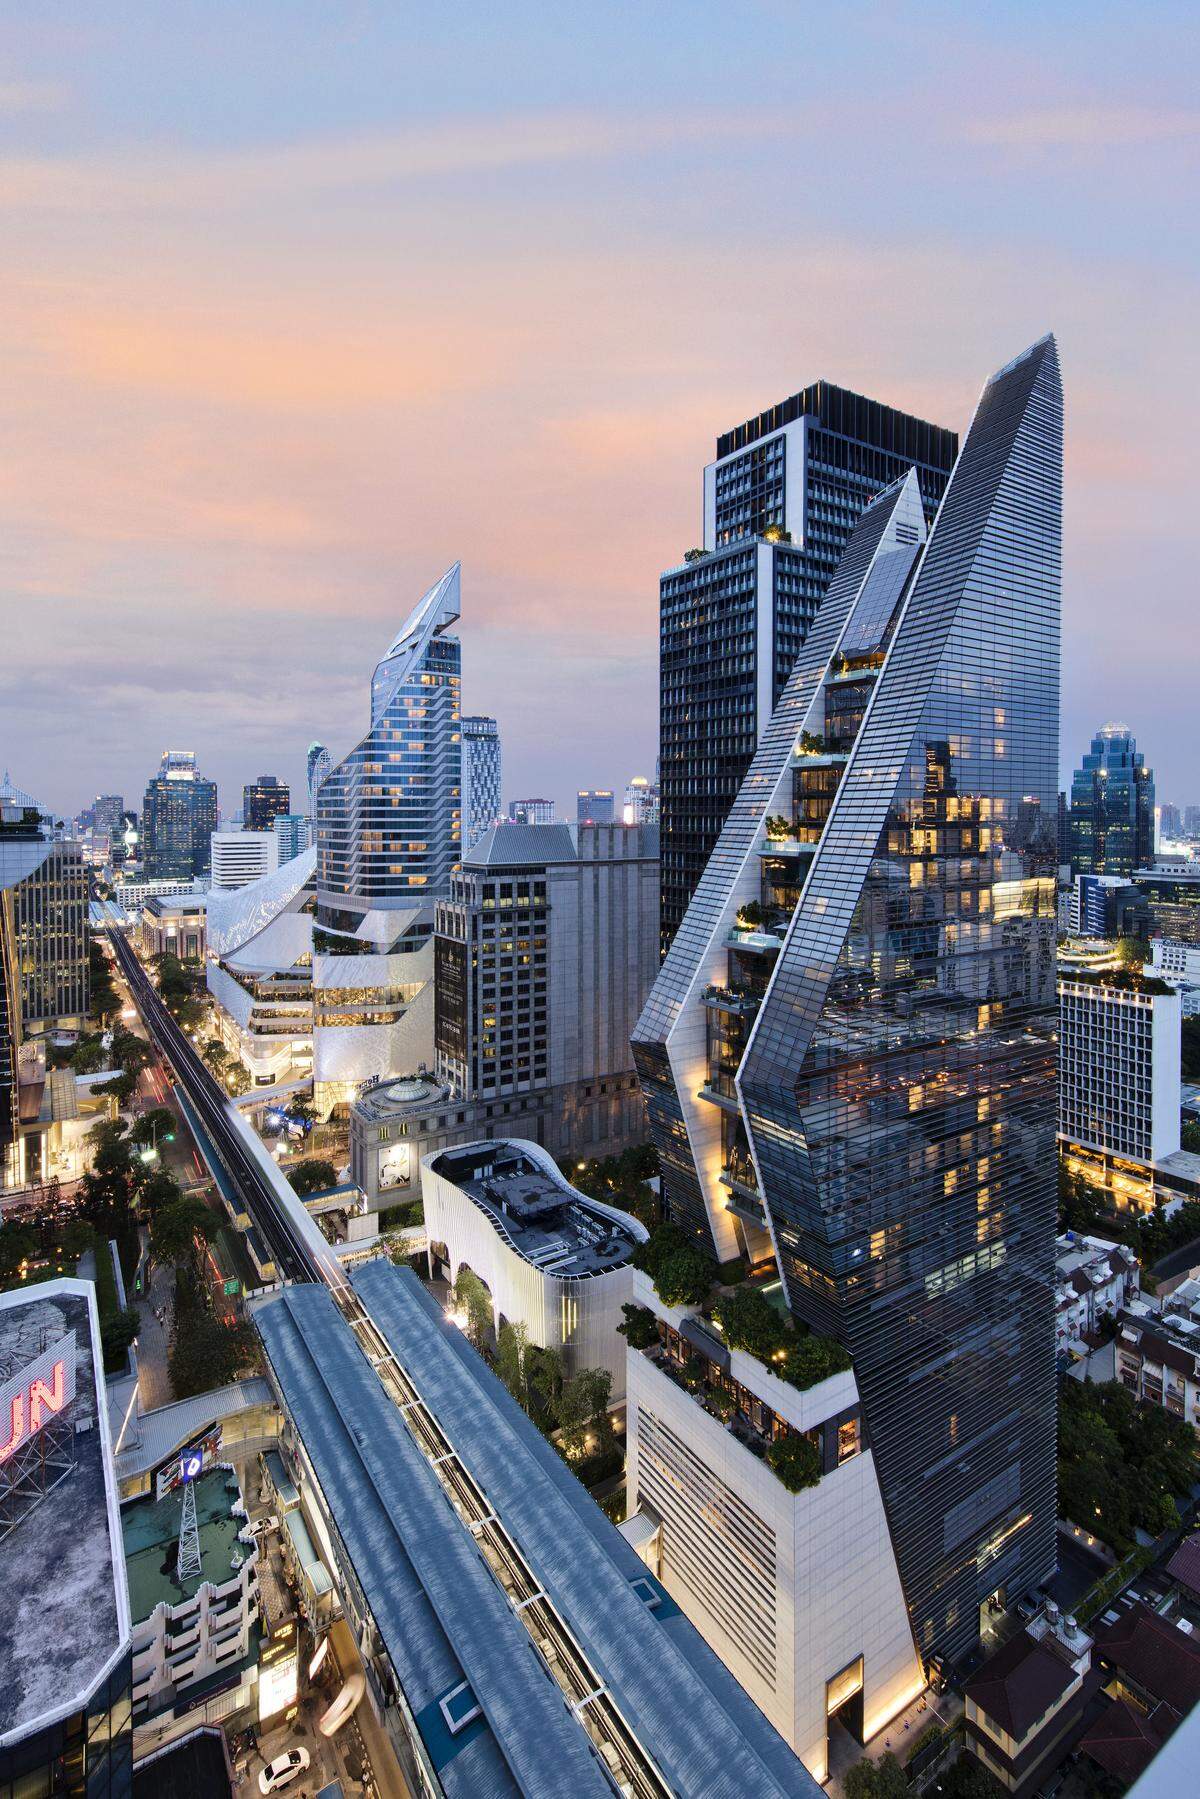 Das Rosewood ist ein thailändisches Luxushotel mit 155 Metern Höhe, geplant von Kohn Pedersen Fox Associates; Tandem Architekten.   > > Mehr Infos unter: www.emporis.de